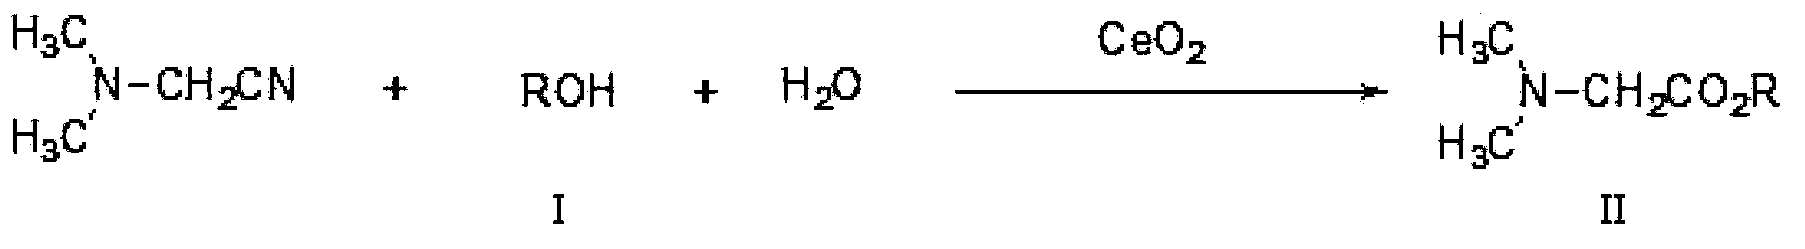 One-pot method of preparing N,N-dimethyl glycinate